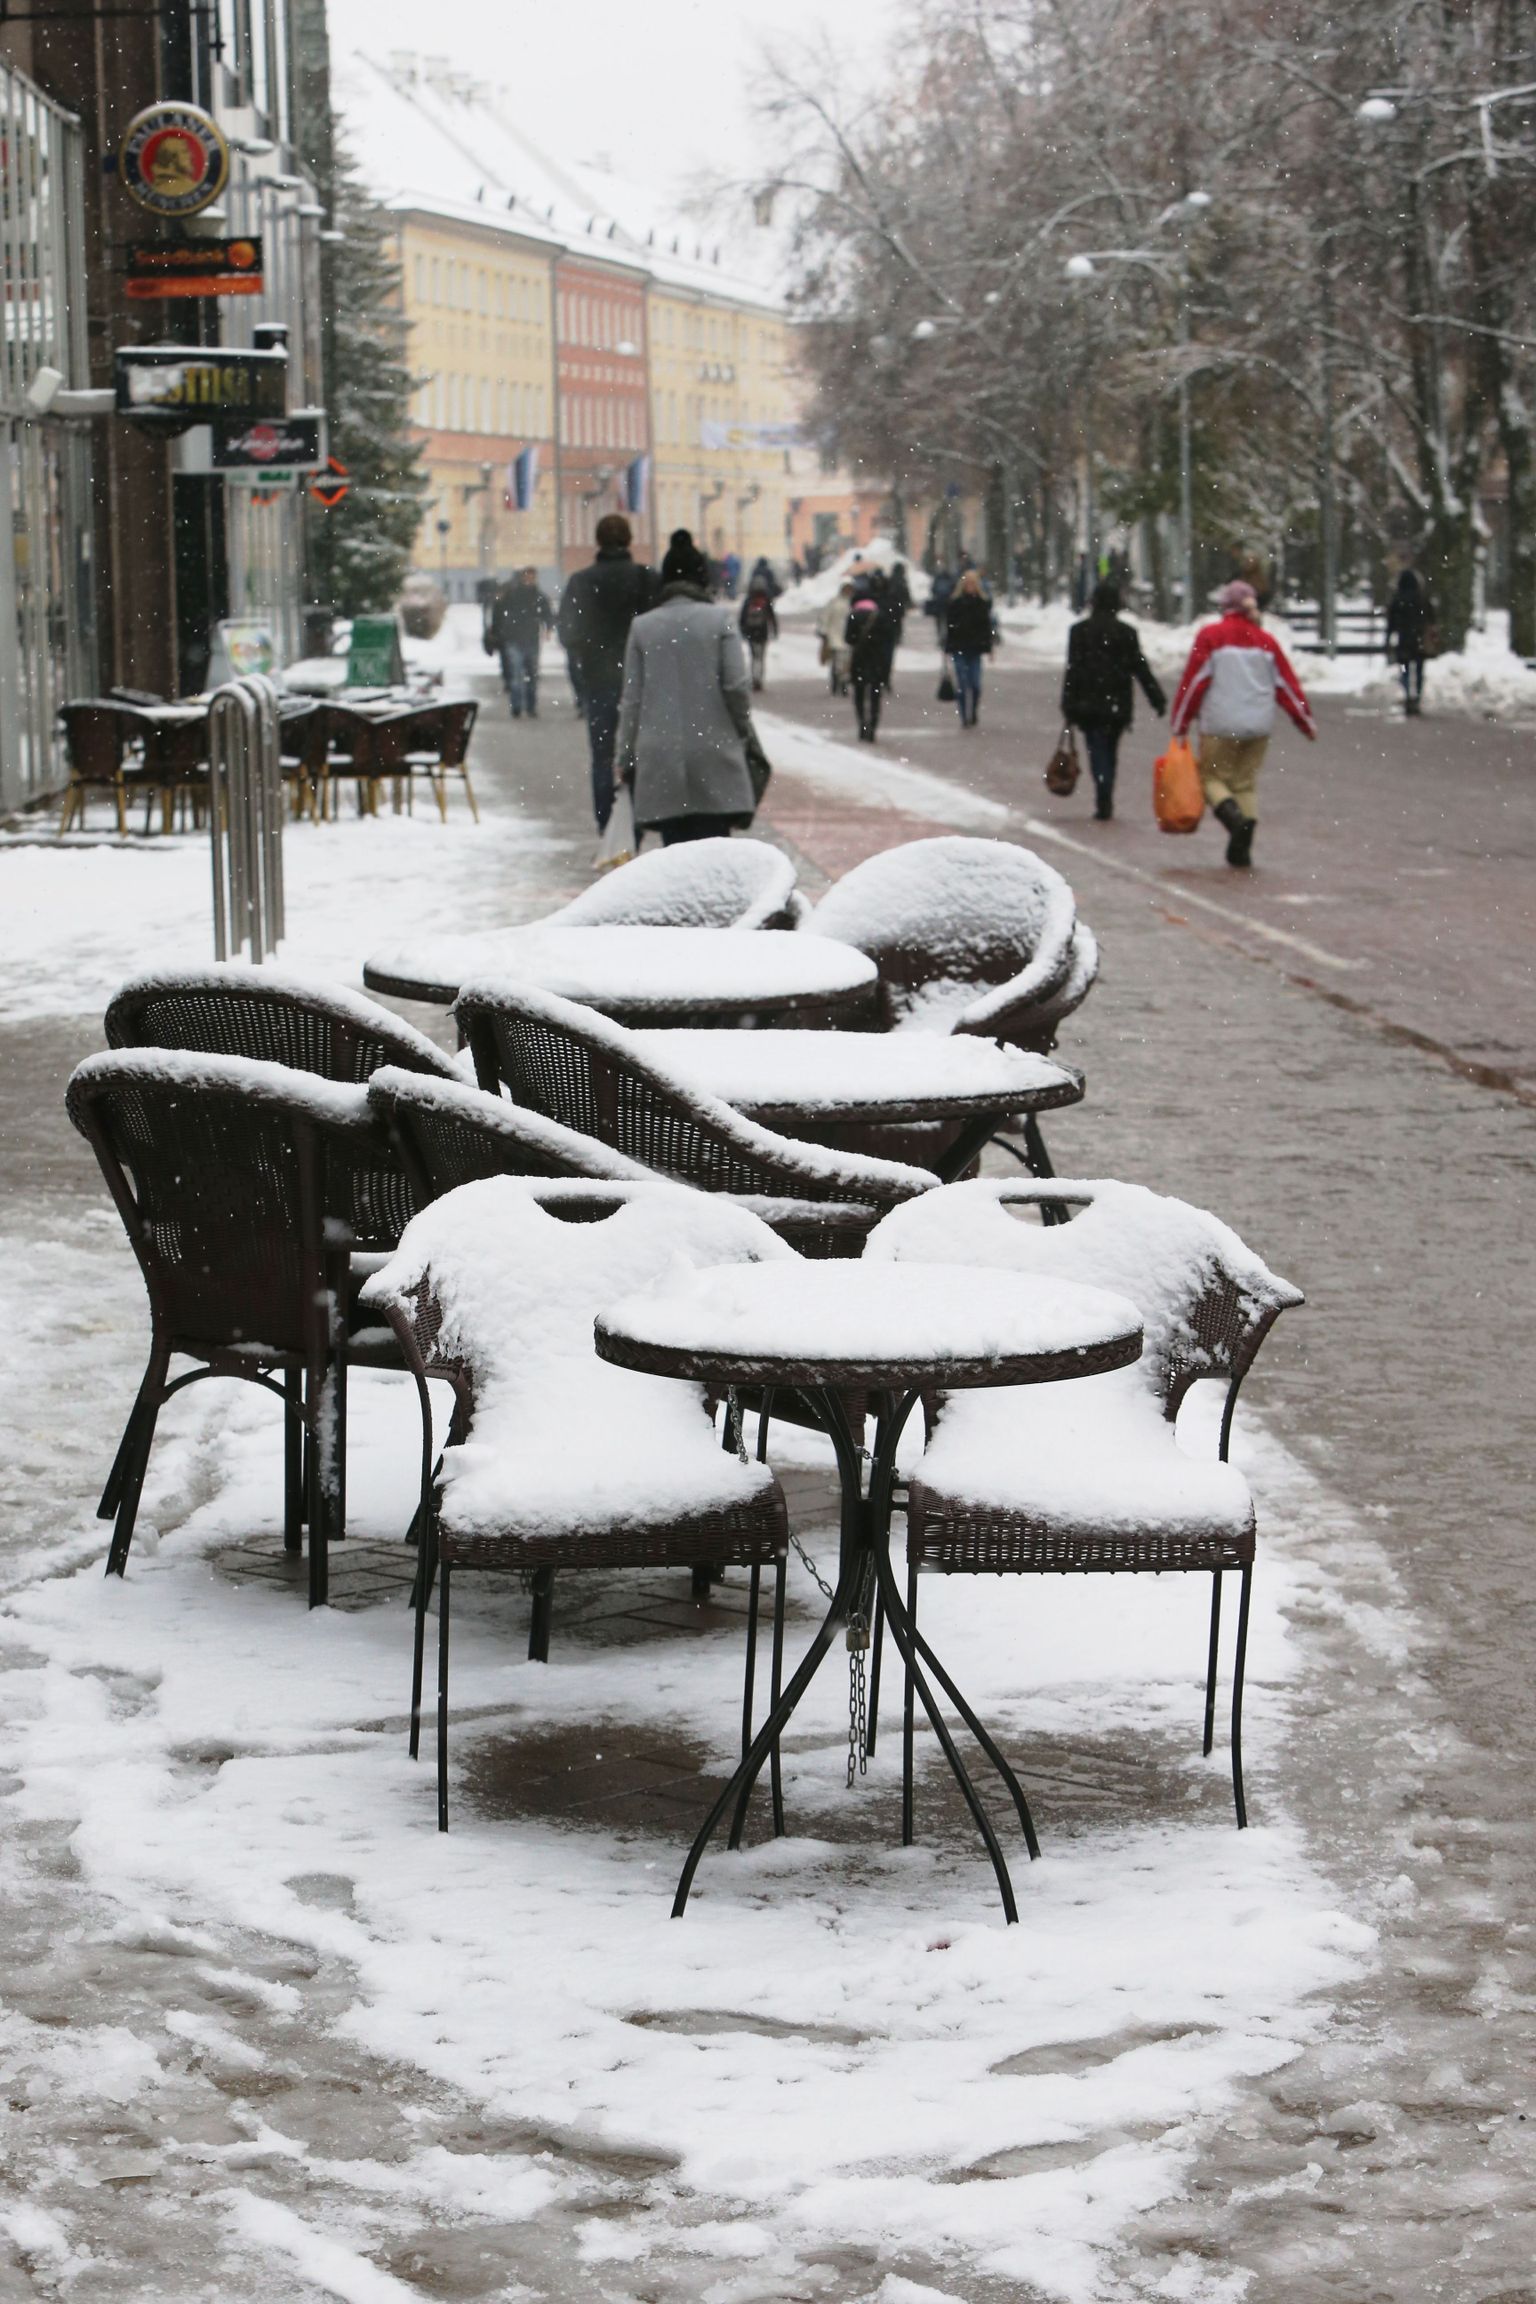 Talv tuli ootamatult ka Küüni tänaval olevale suvekohvi­kule. Kuid välimööbli varju alla kolimisega polegi kiiret, sest ilm soojeneb.